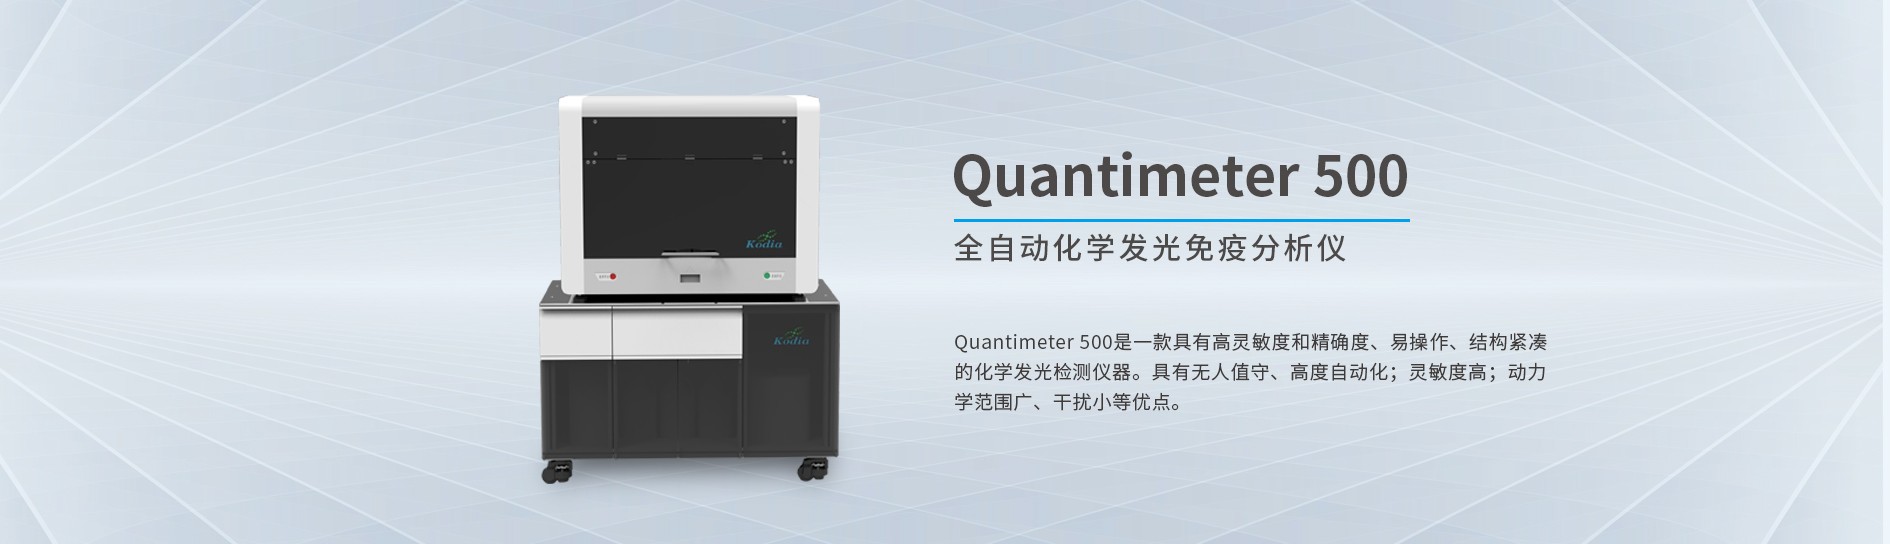 全自动化学发光免疫分析仪Quantimeter 500